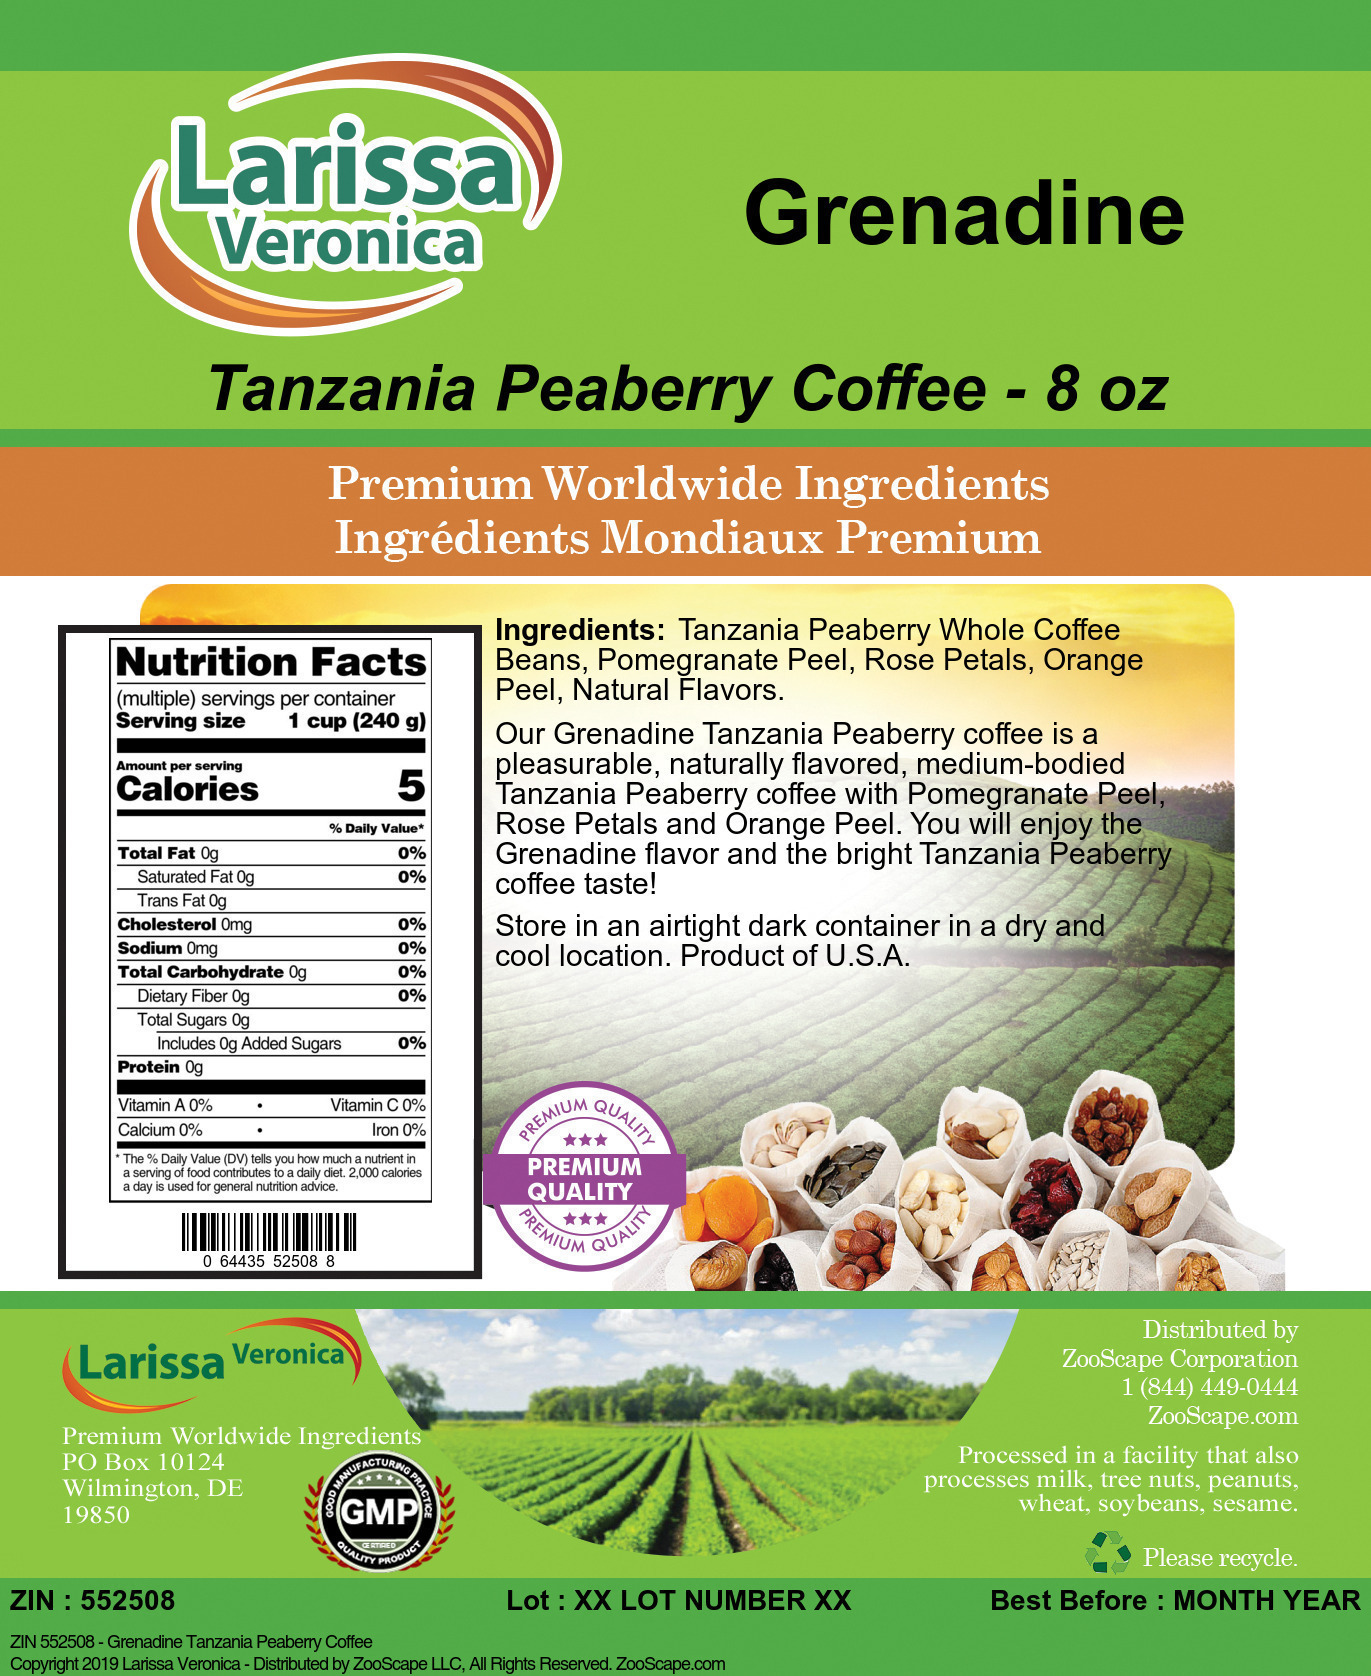 Grenadine Tanzania Peaberry Coffee - Label